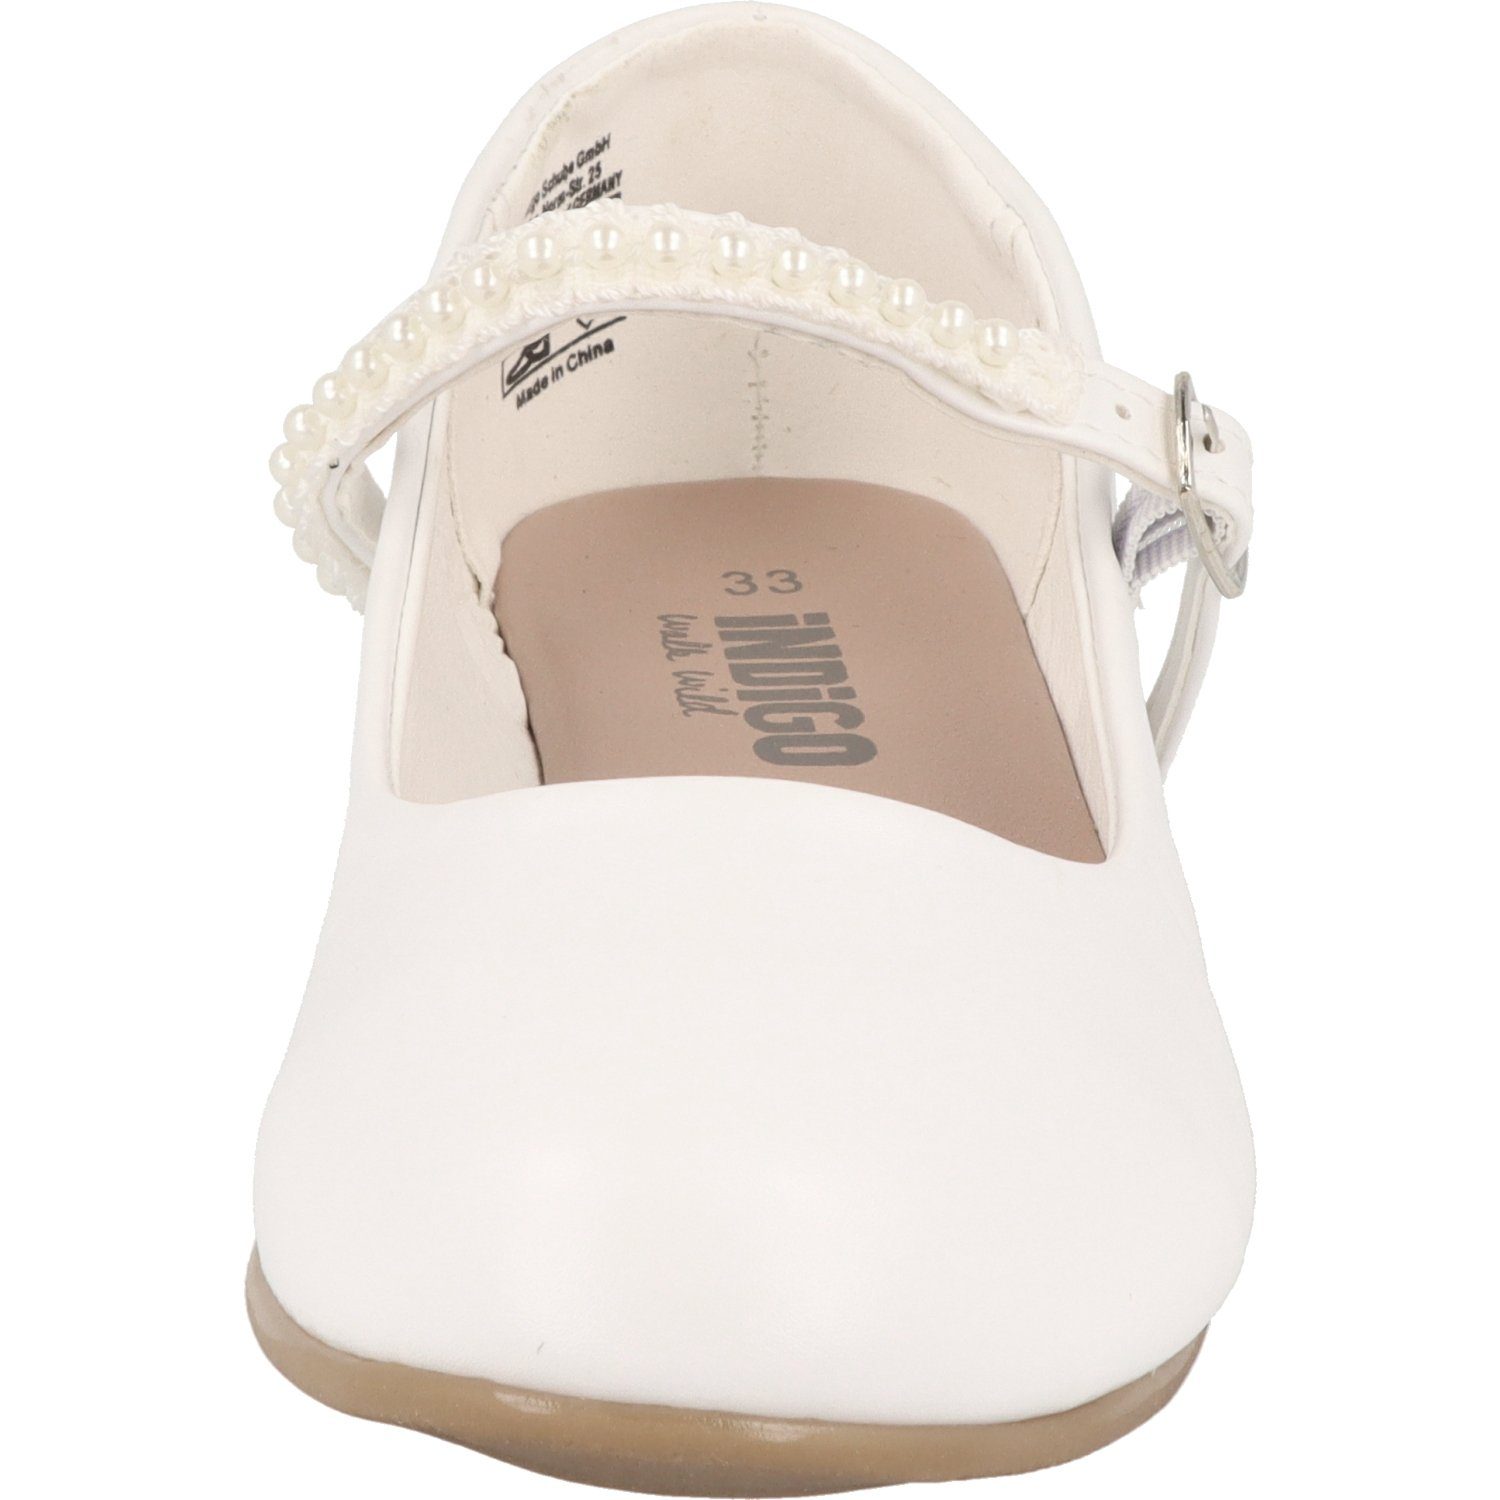 Konfi mit Ballerina mit 422-317 Mädchen Riemchen Taufe Perlen Indigo Weiß